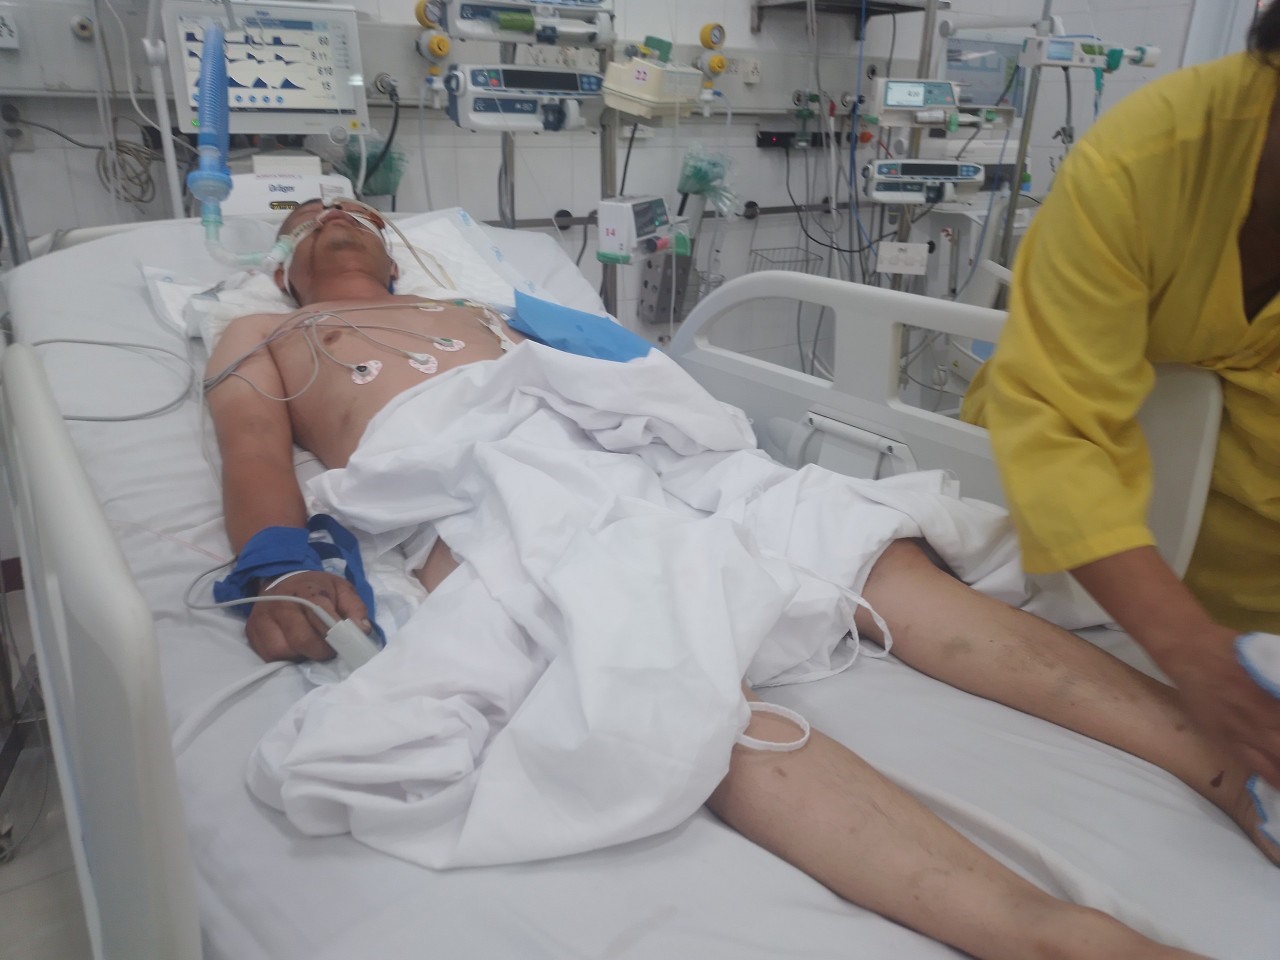 Anh Cương hiện vẫn đang nằm điều trị tại Bệnh viện Hữu Nghị Việt Đức. Ảnh: Gia đình cung cấp.